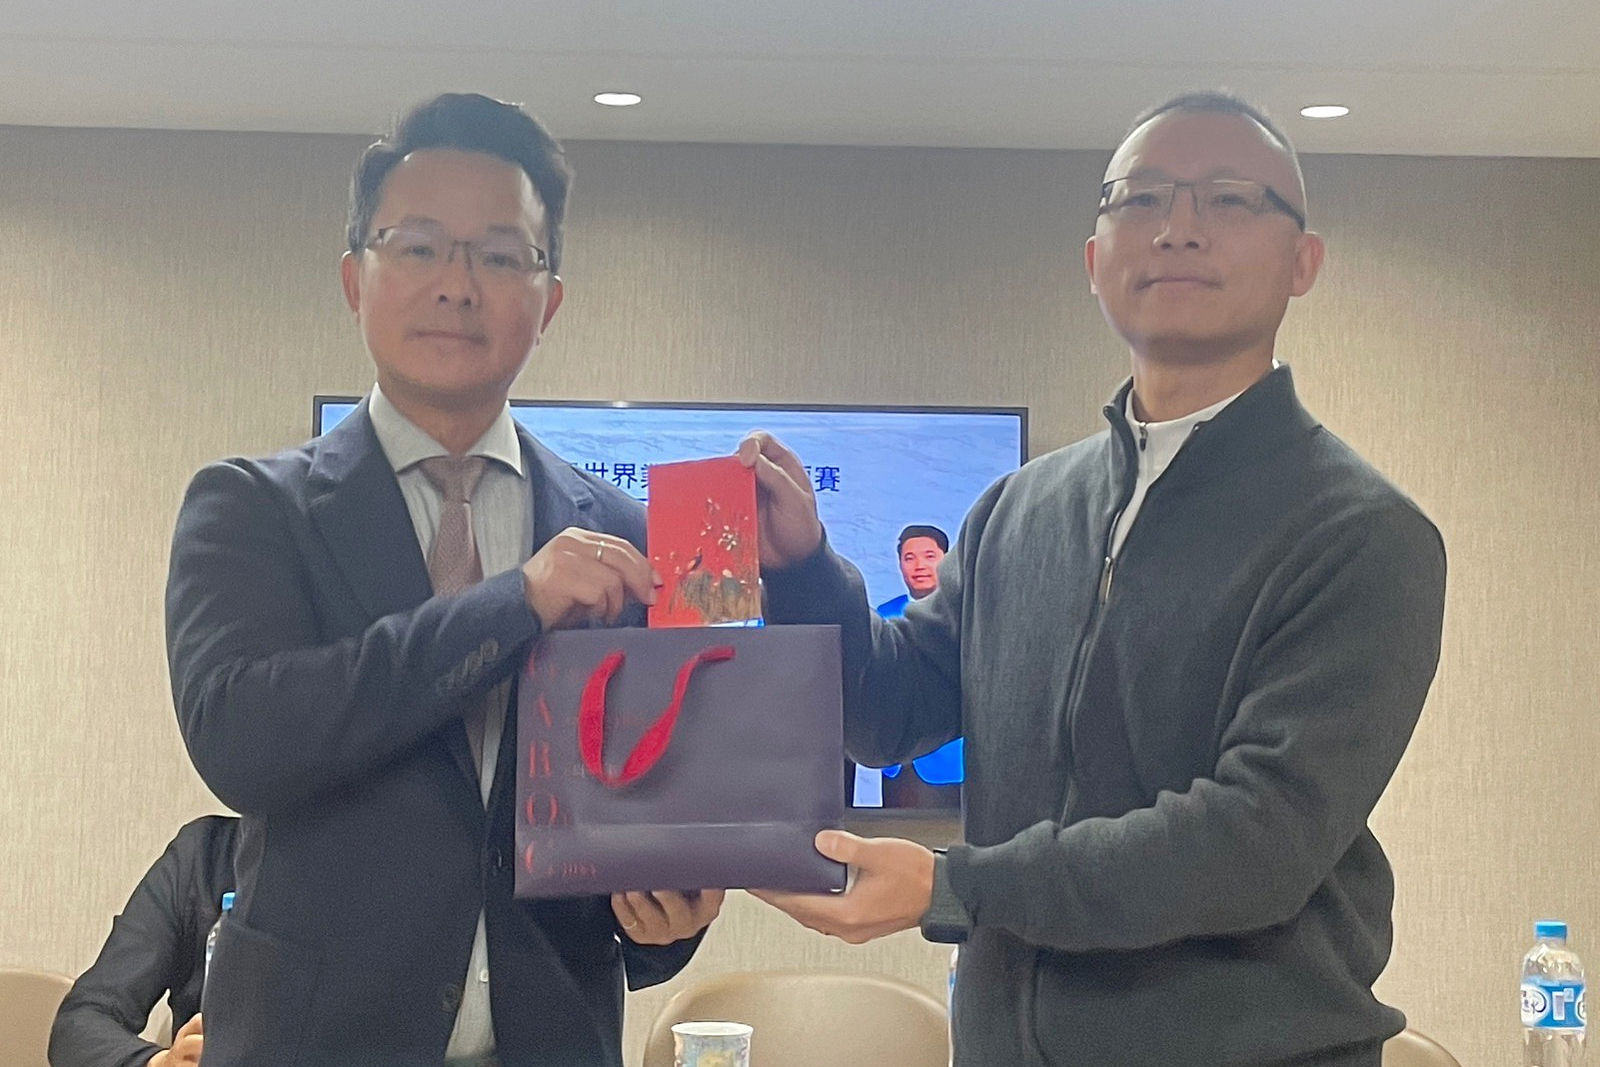 中華高協理事長王政松(左) 頒發選手禮物與助學金，右為黃亭瑄家長。